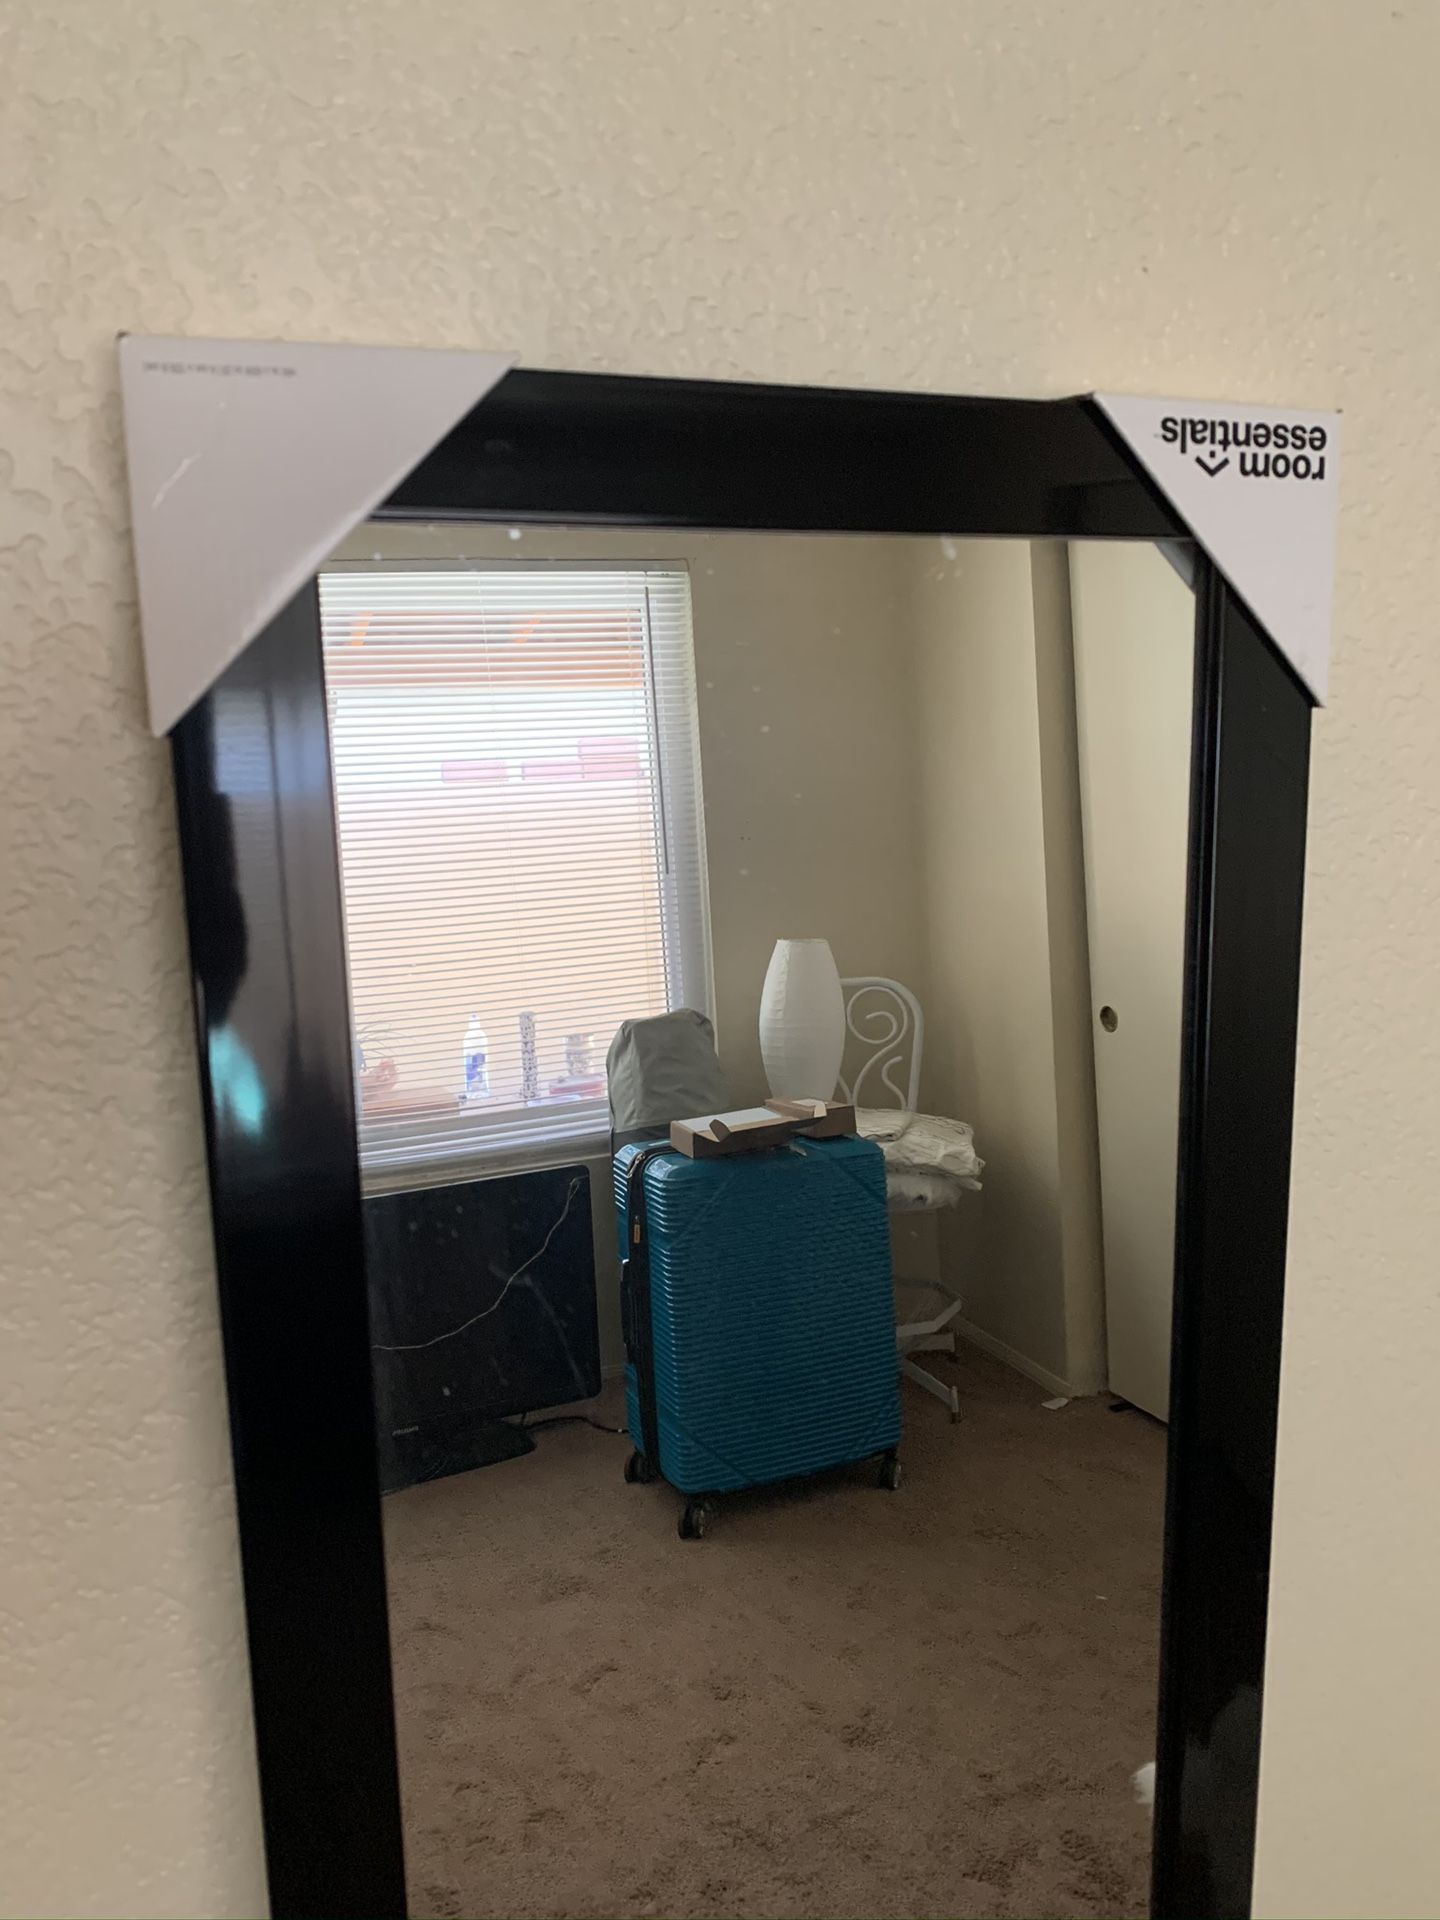 Door mirror. NEW. NEVER USED. with hangers